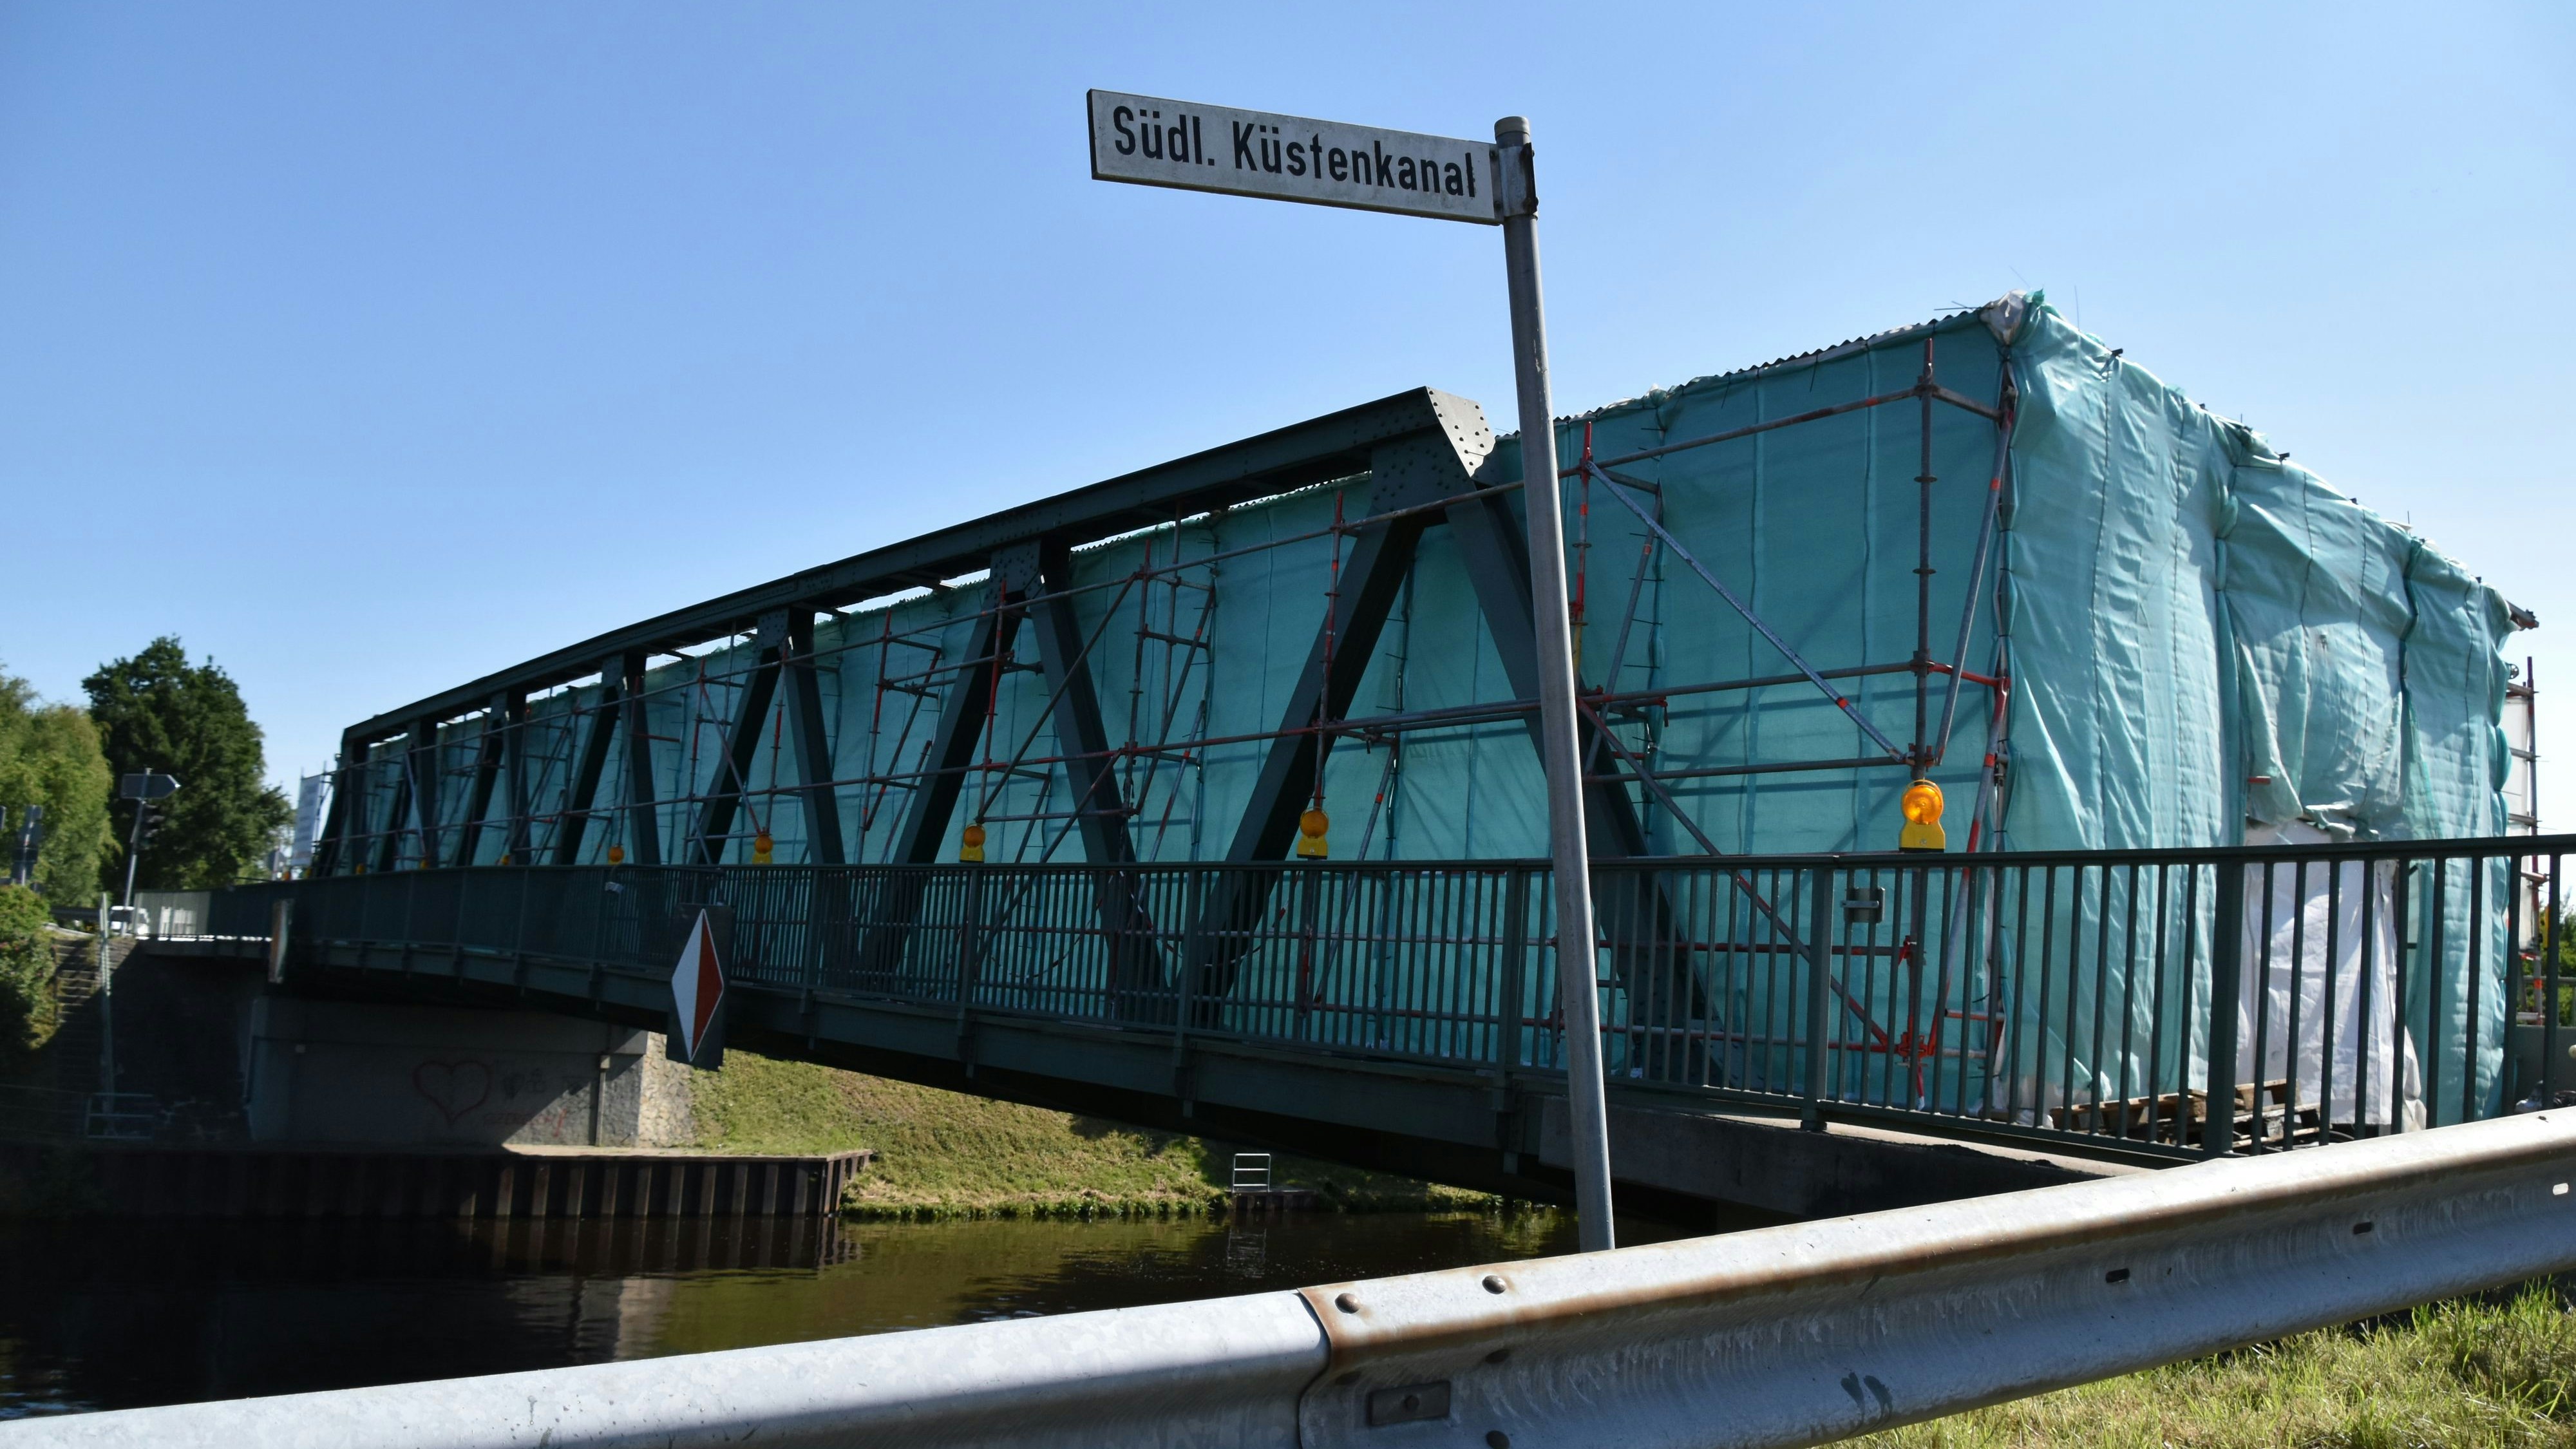 Das Wahrzeichen von Edewechterdamm, die Küstenkanalbrücke, befindet sich aktuell im Umbau. Foto: Hahn